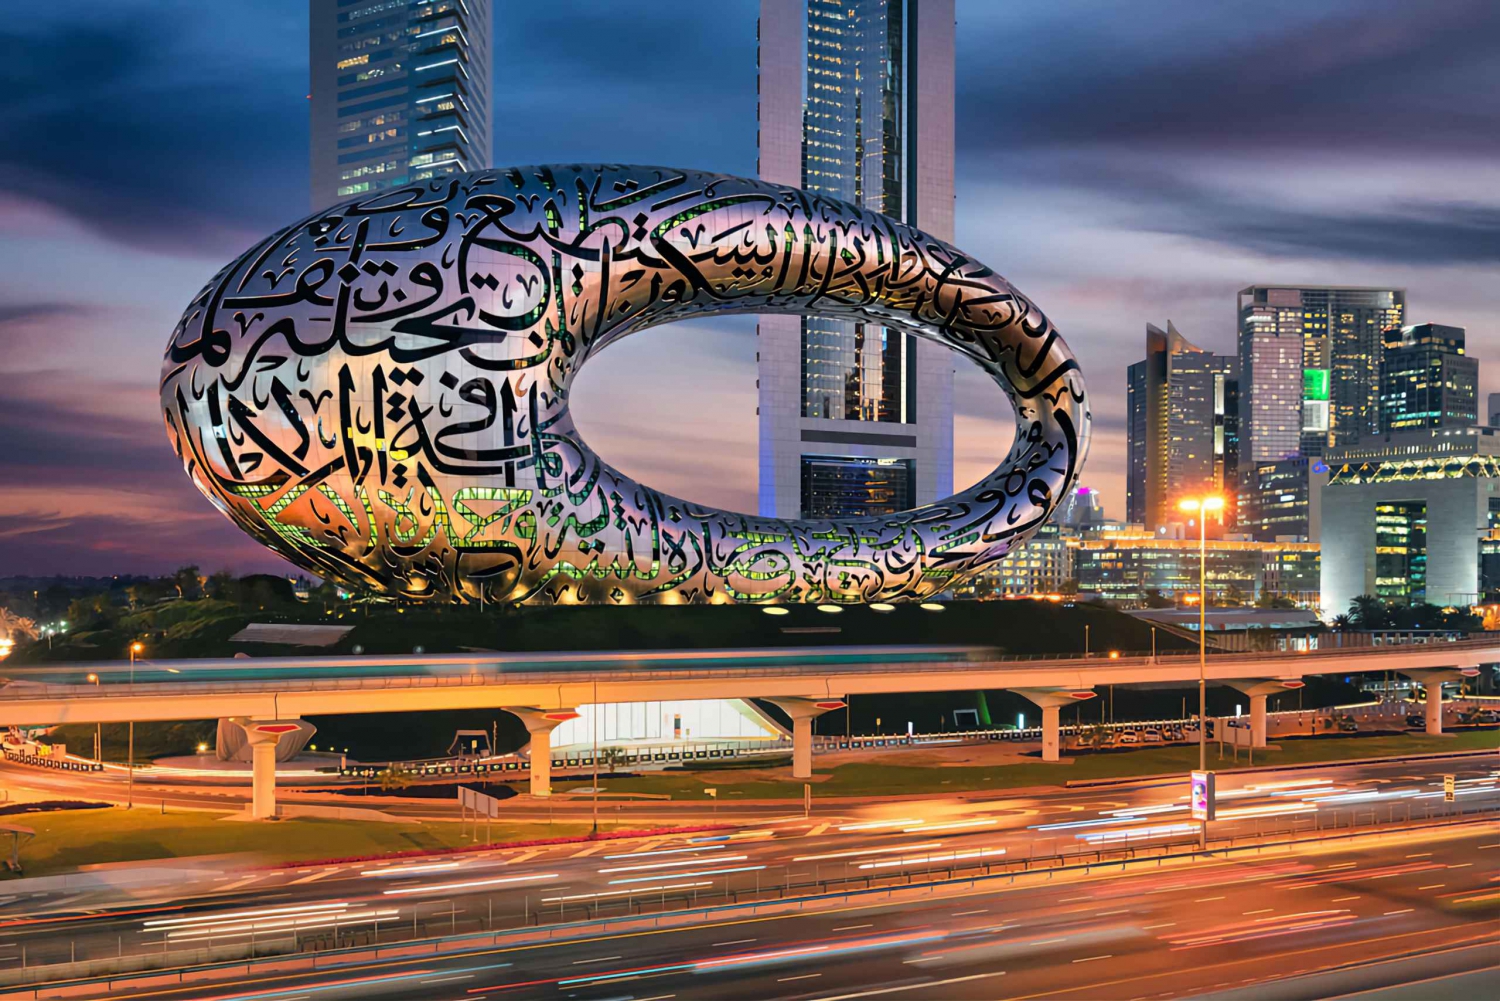 Dubai: Stopover City Highlights-tur med fleksibelt tidspunkt